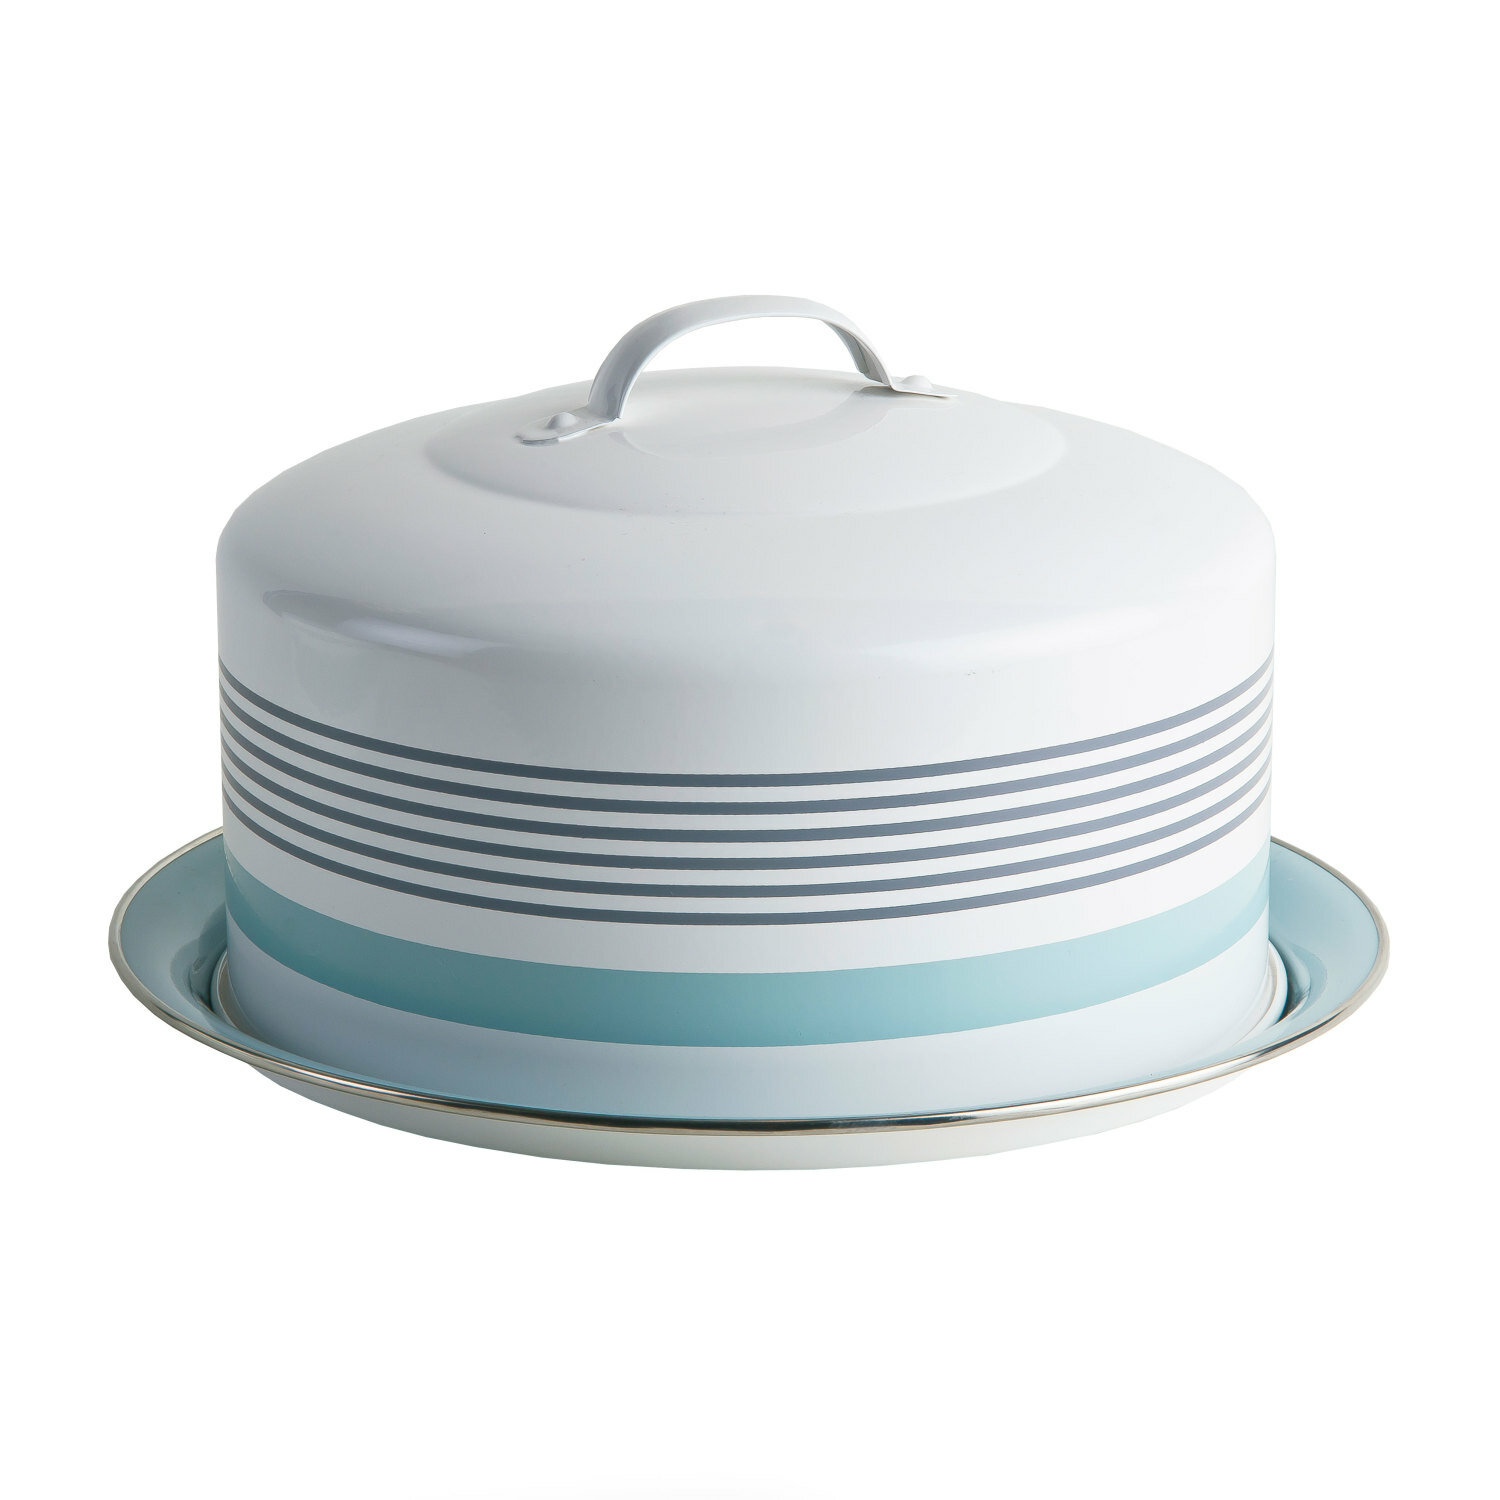 Jamie Oliver Vintage Cake Tin Large Blue Storage Holder Bake Keeper Quality Gift 